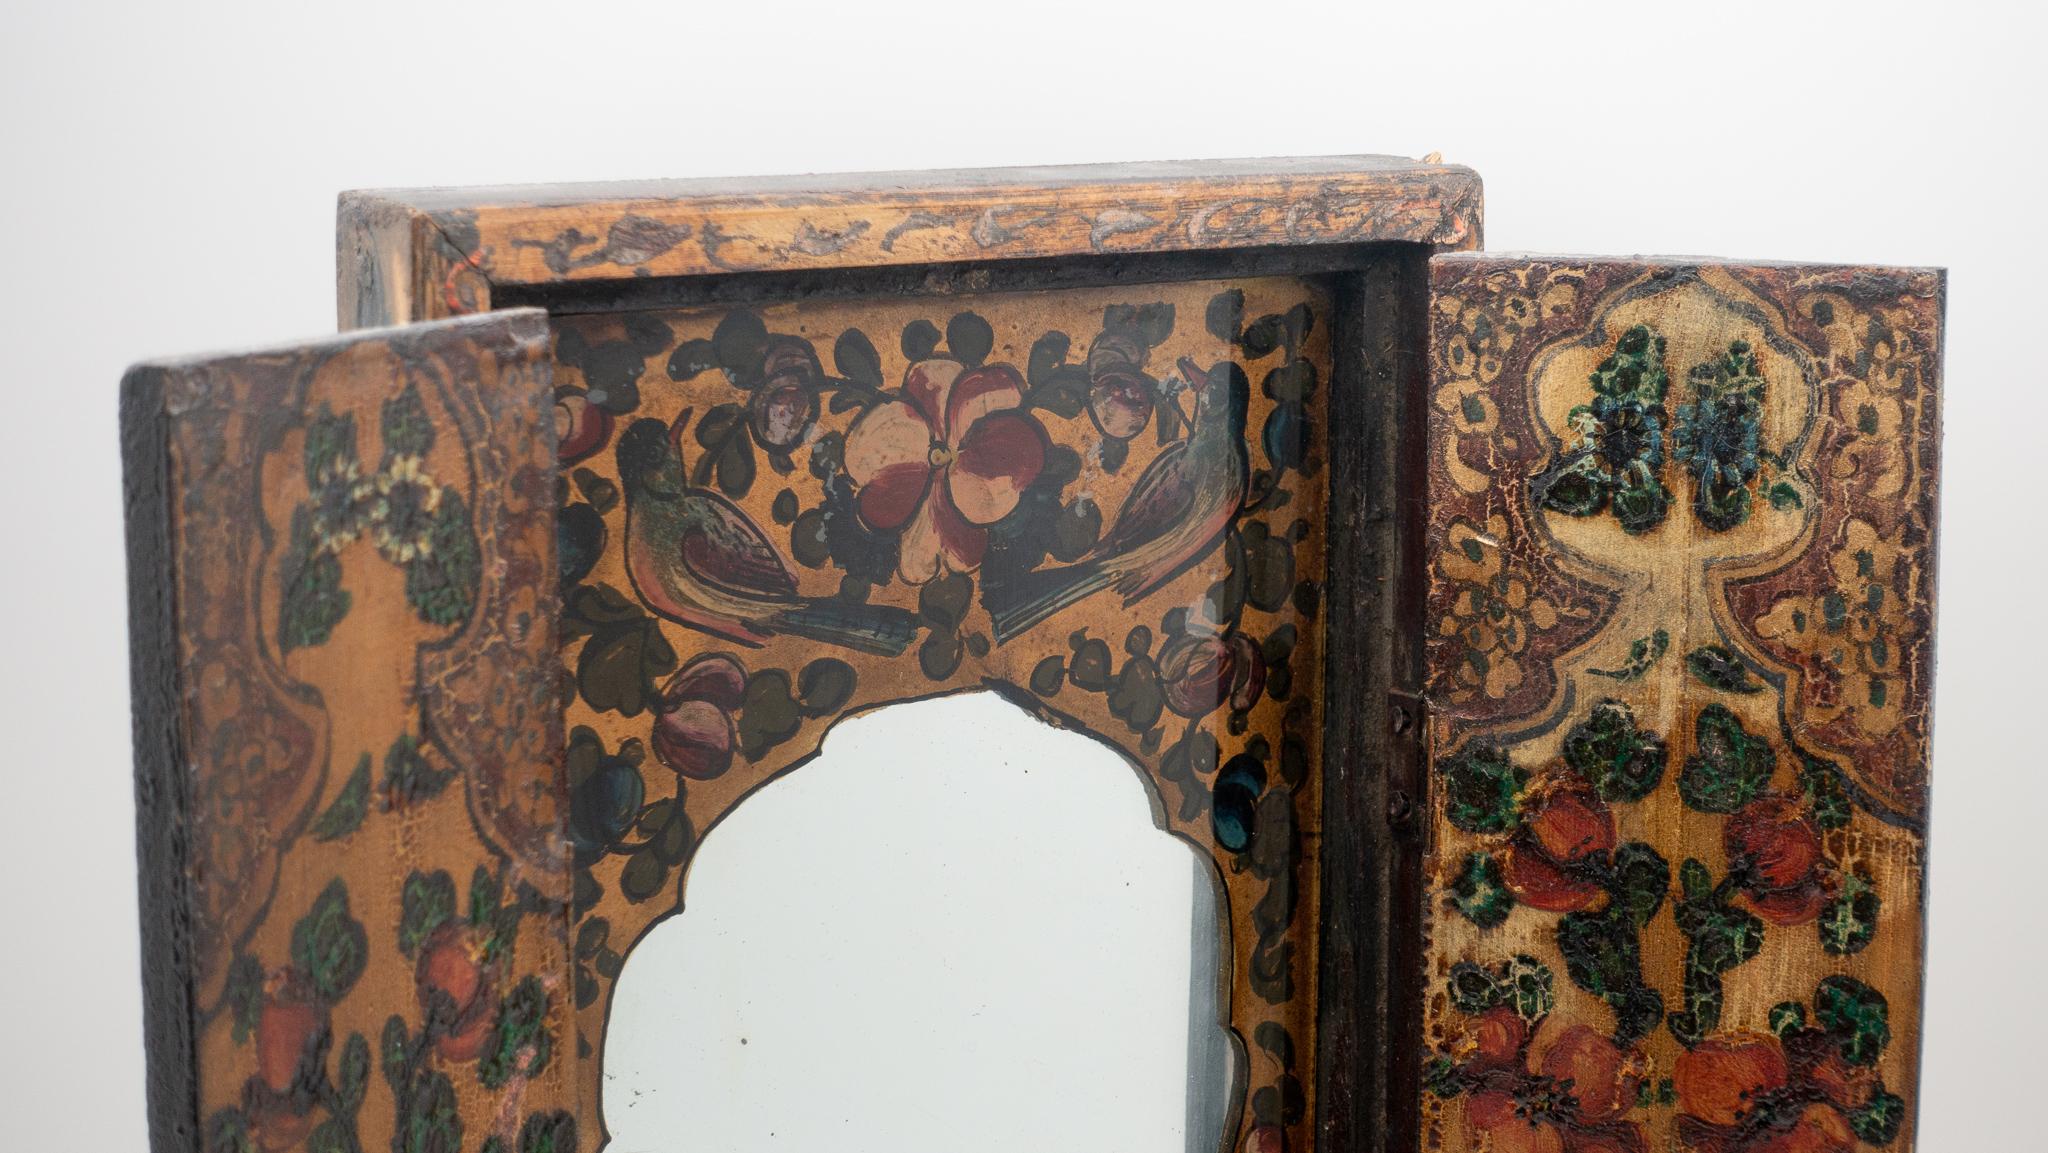 miroir persan du XIXe siècle de l'ère Qajar avec cadre en bois peint:: panneaux à charnières qui s'ouvrent pour révéler un intérieur de miroir églomisé peint:: et un couvercle arrière en bois pour protéger le verre.